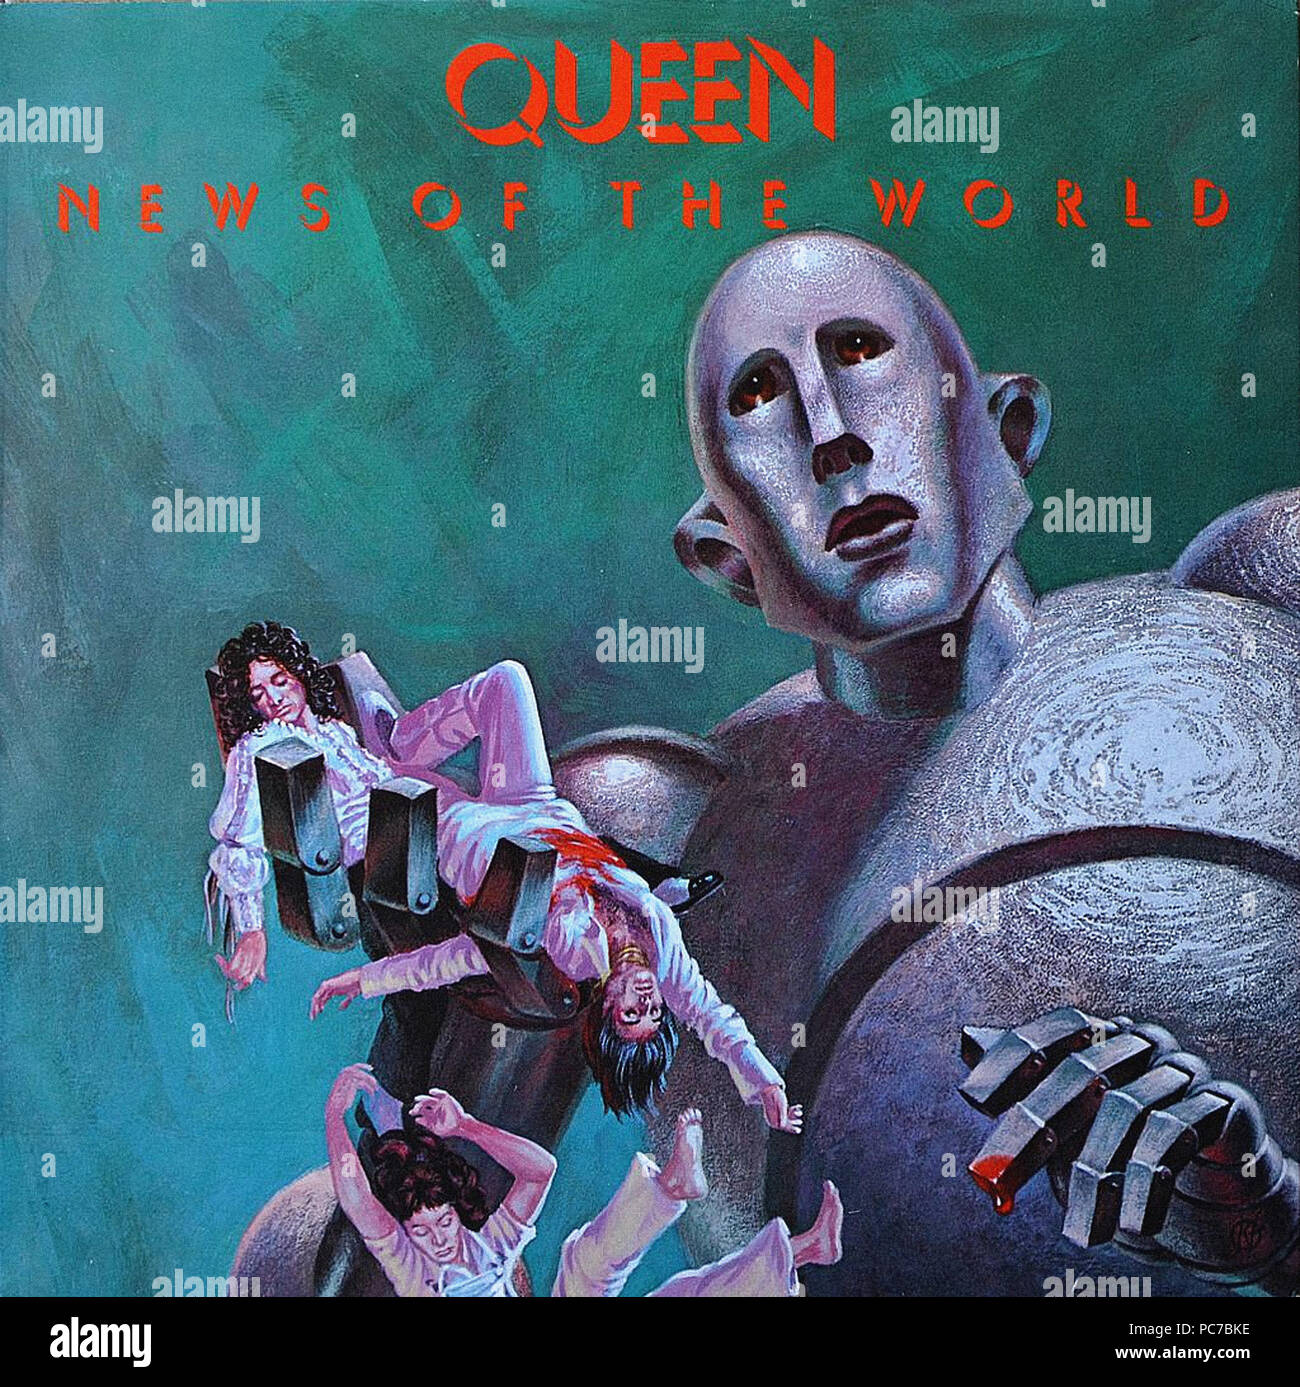 queen album covers